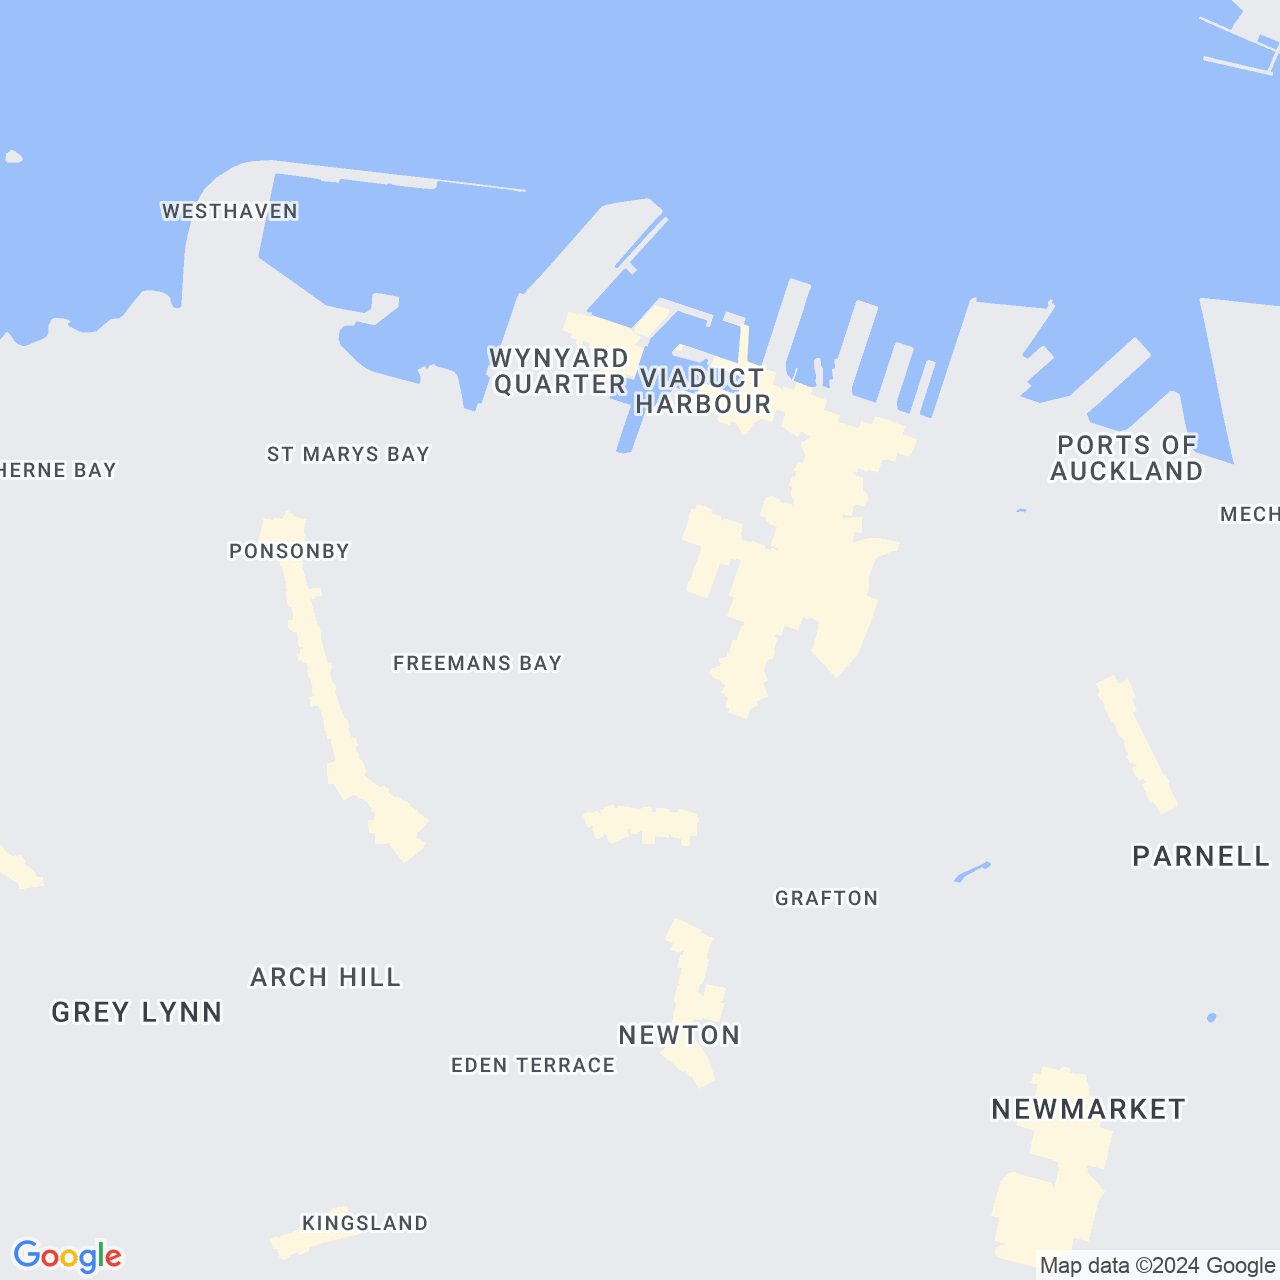 Google maps image